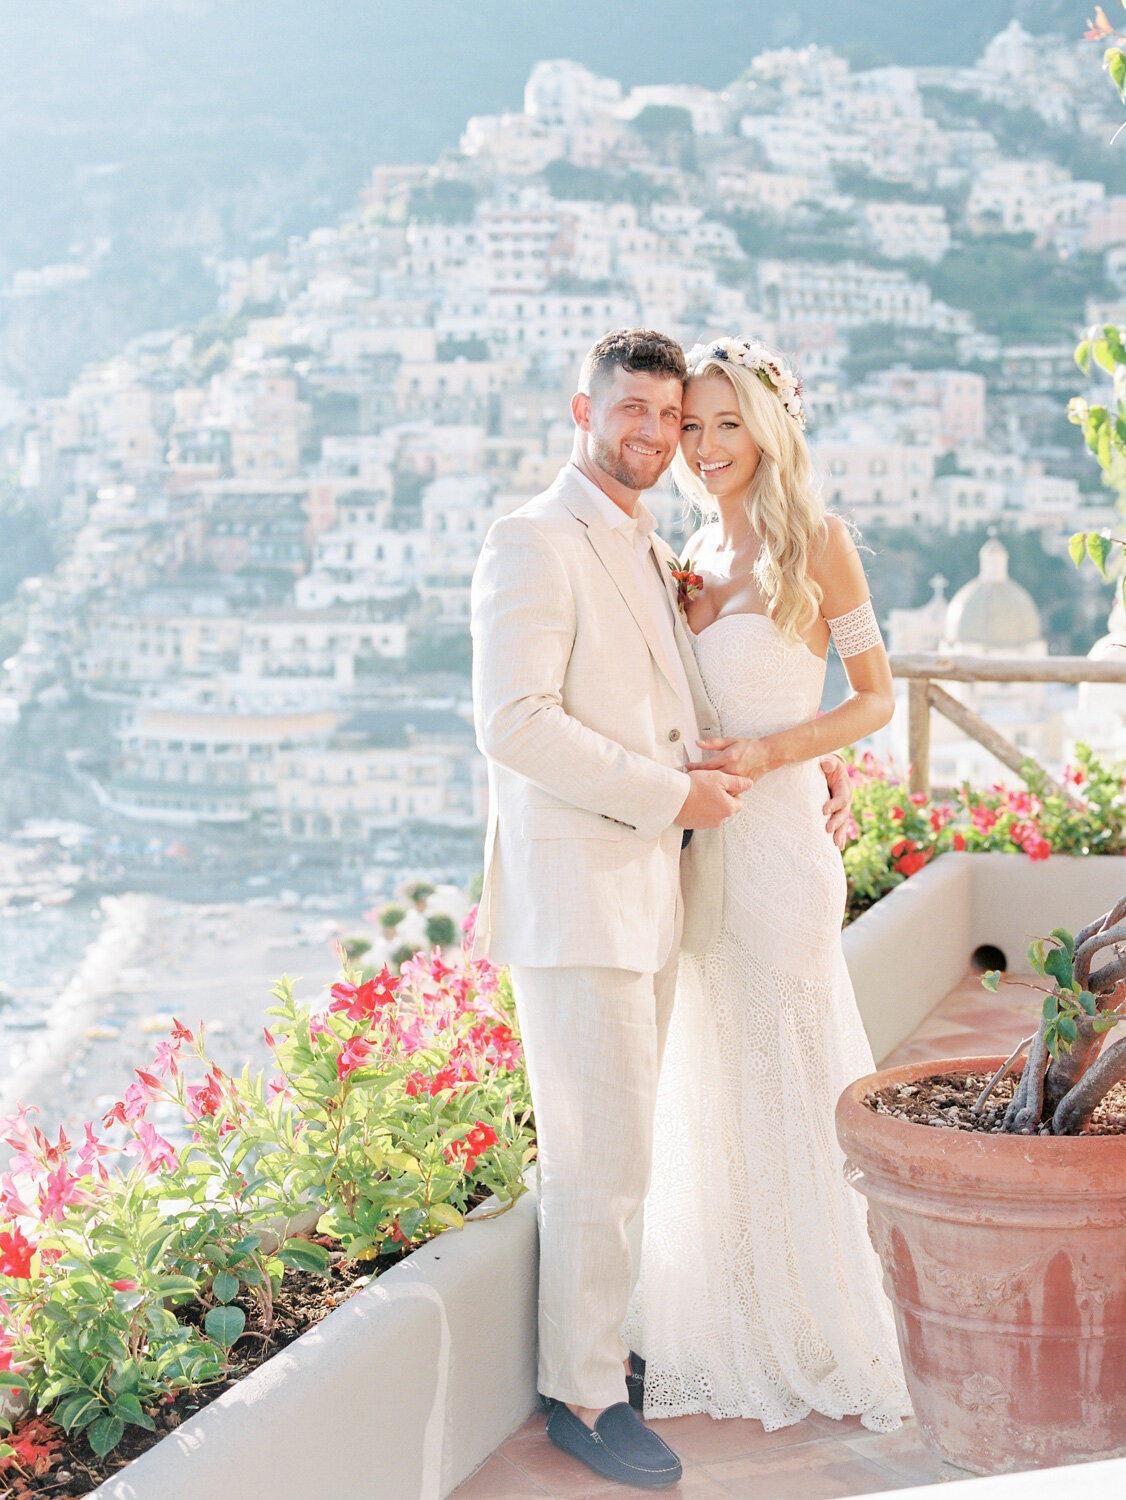 Wedding in Positano Hotel Marincanto